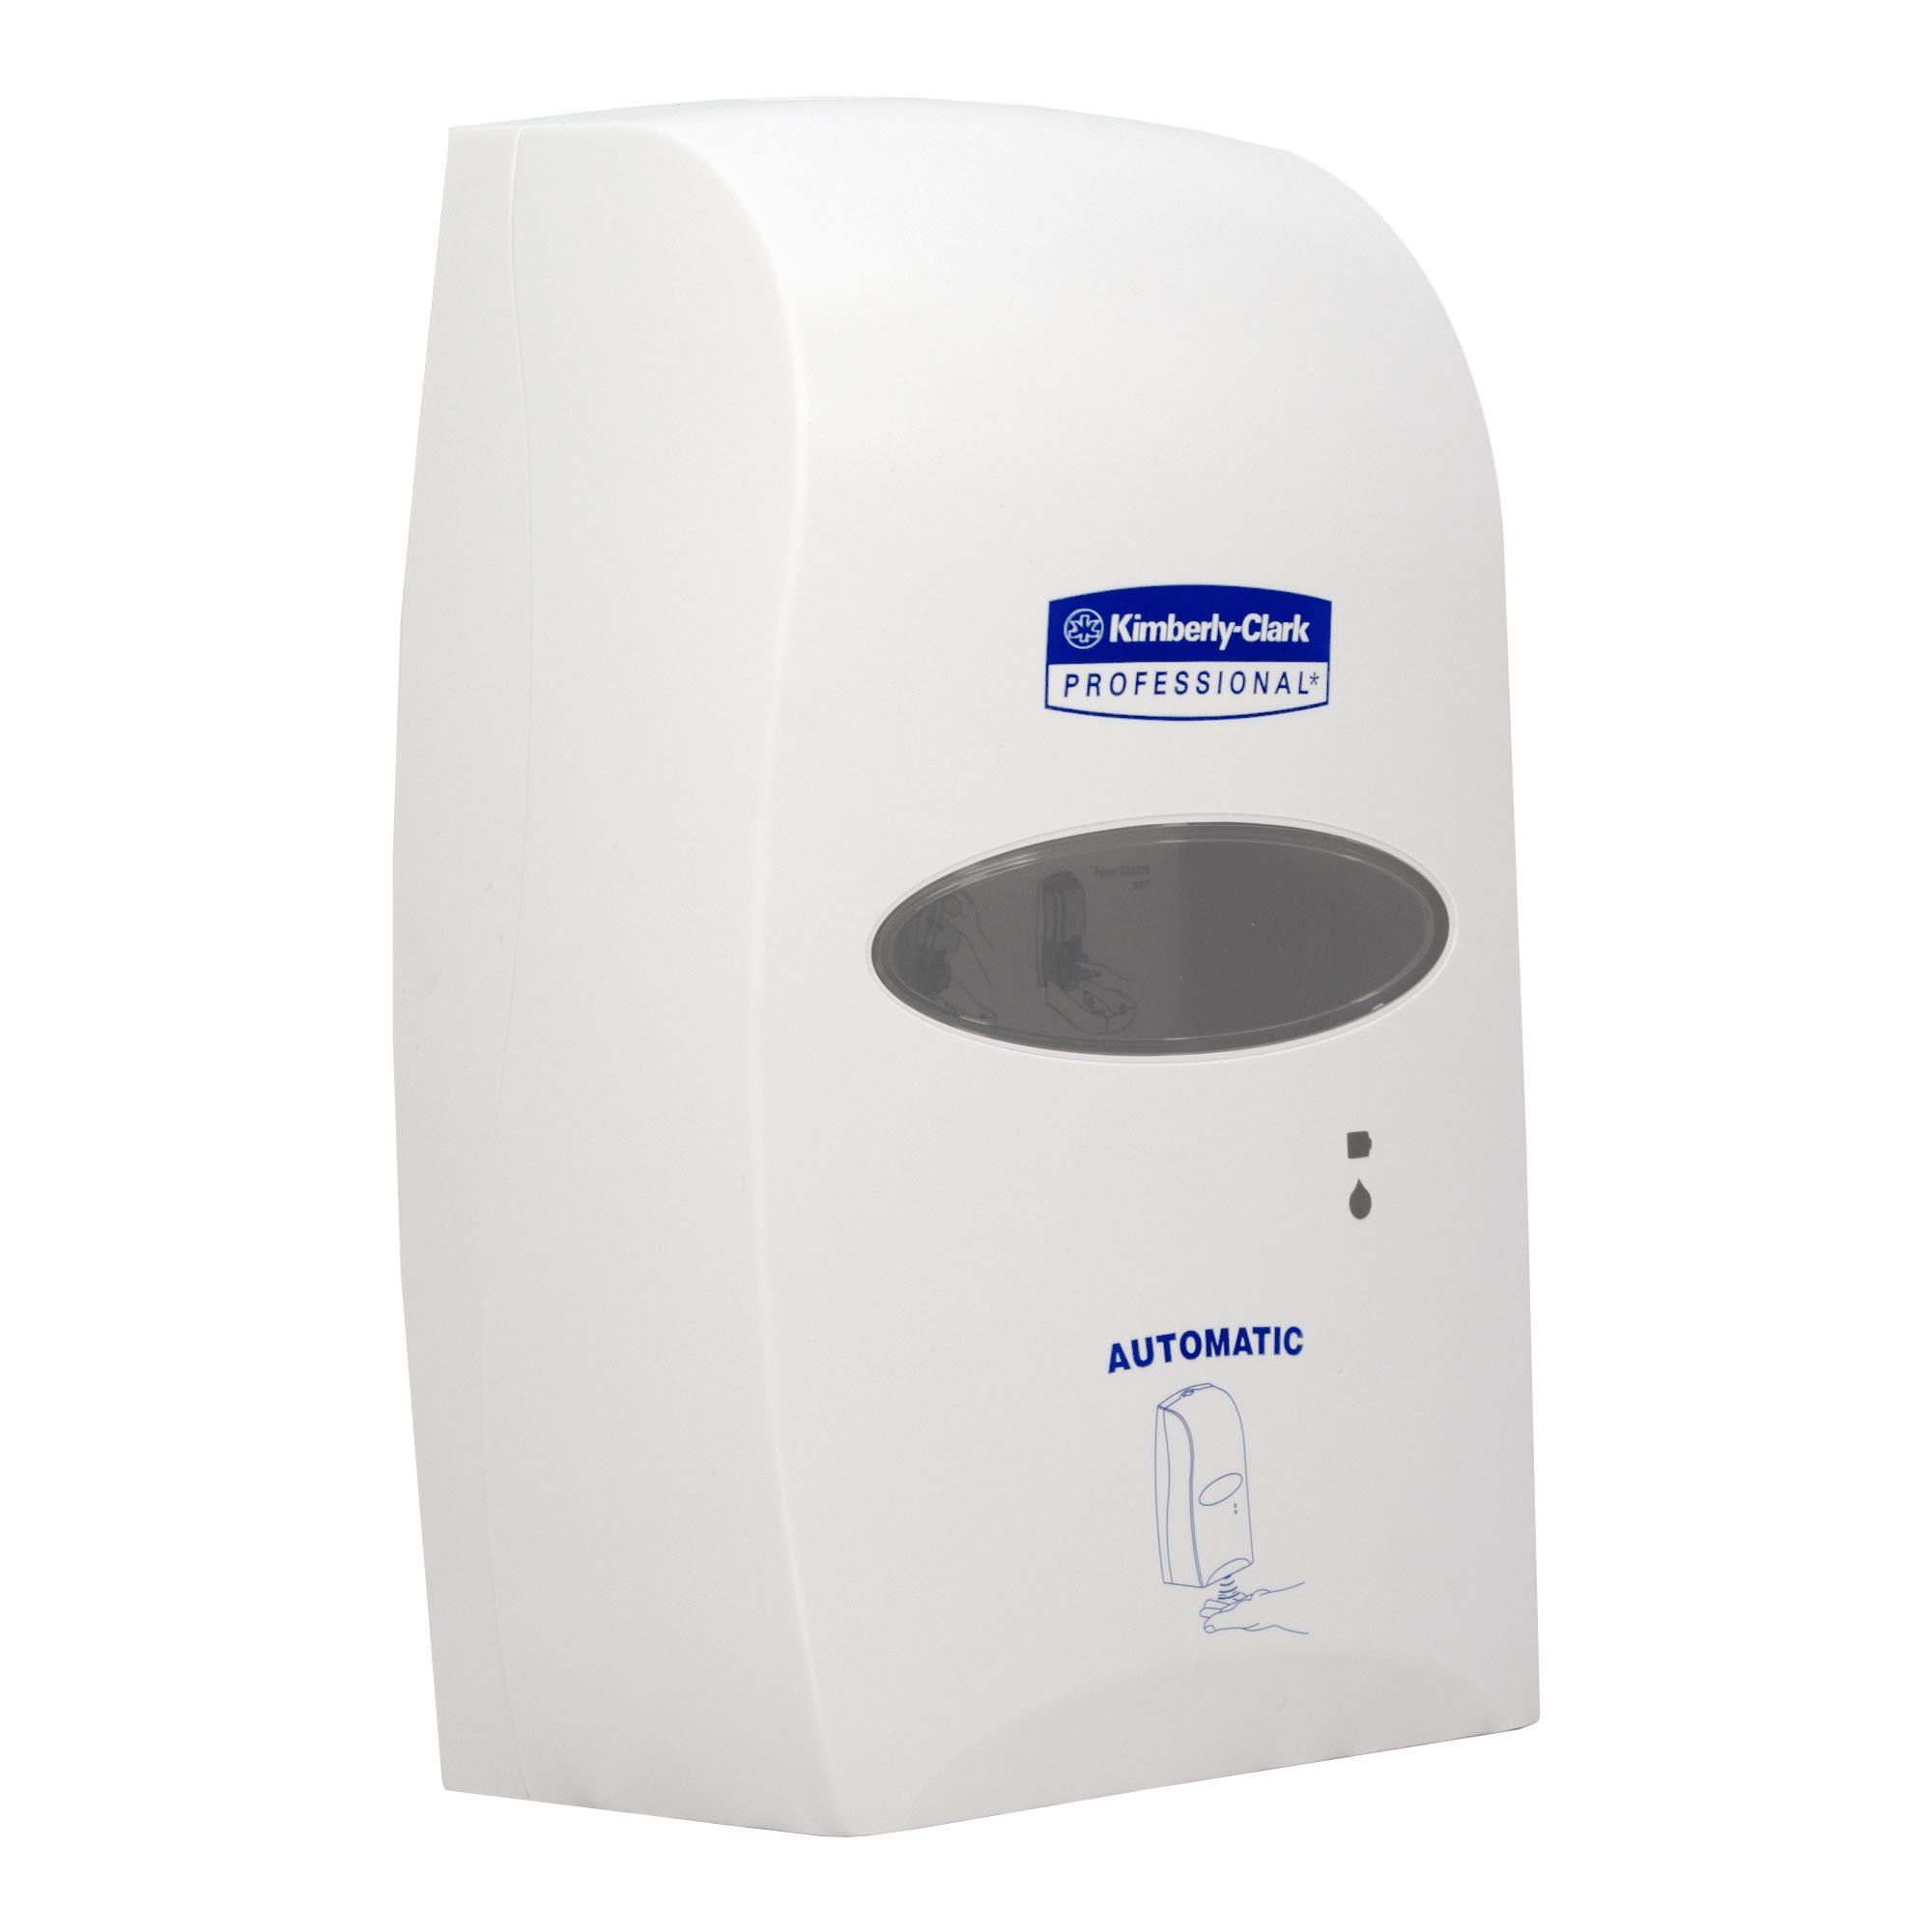 Kimberly-Clark Professional 92147 automatischer Seifen- und Desinfektionsmittelspender mit Sensor 1200 ml